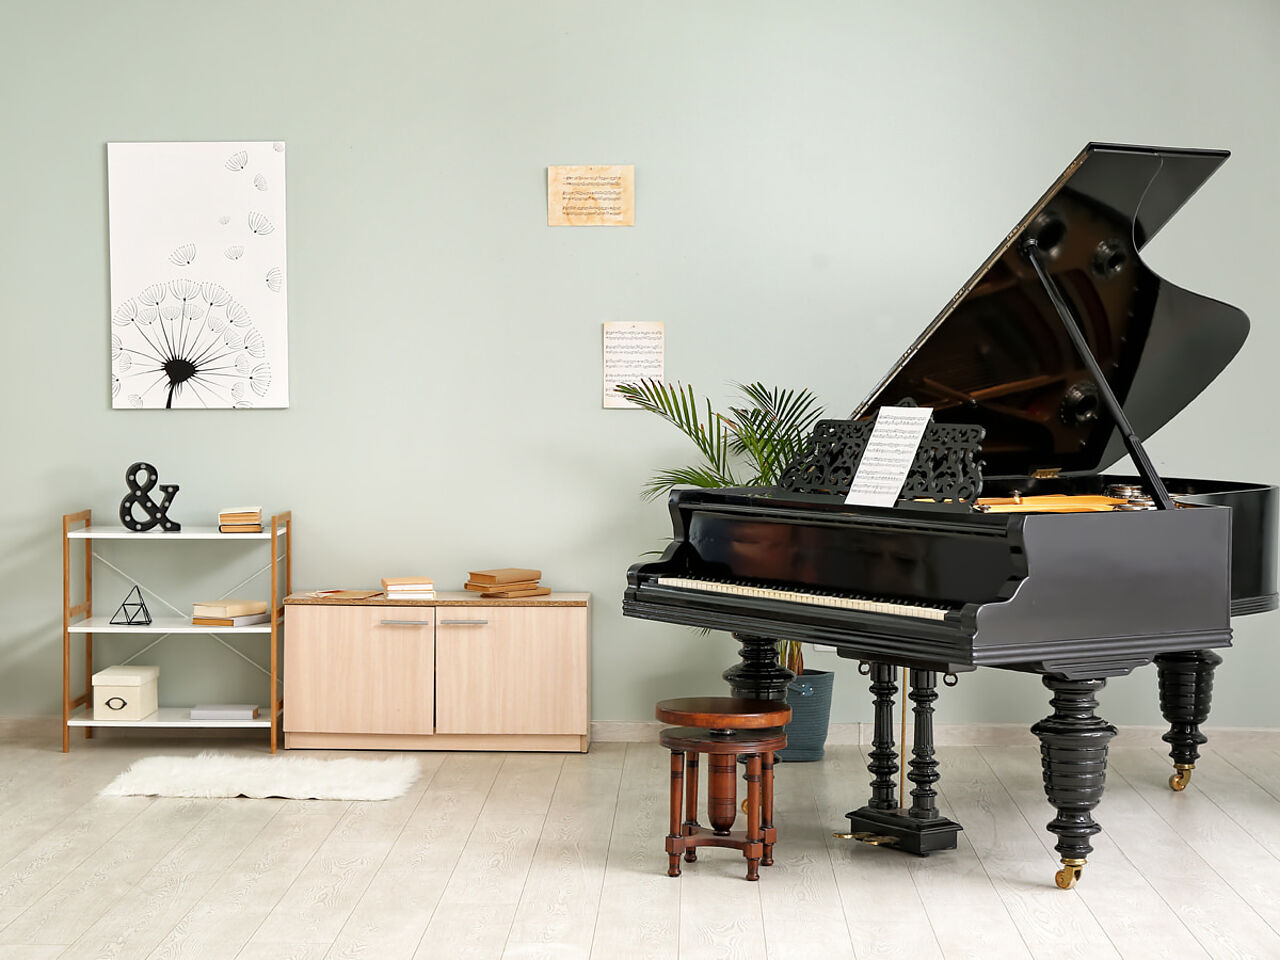 ピアノが置いてある部屋の画像